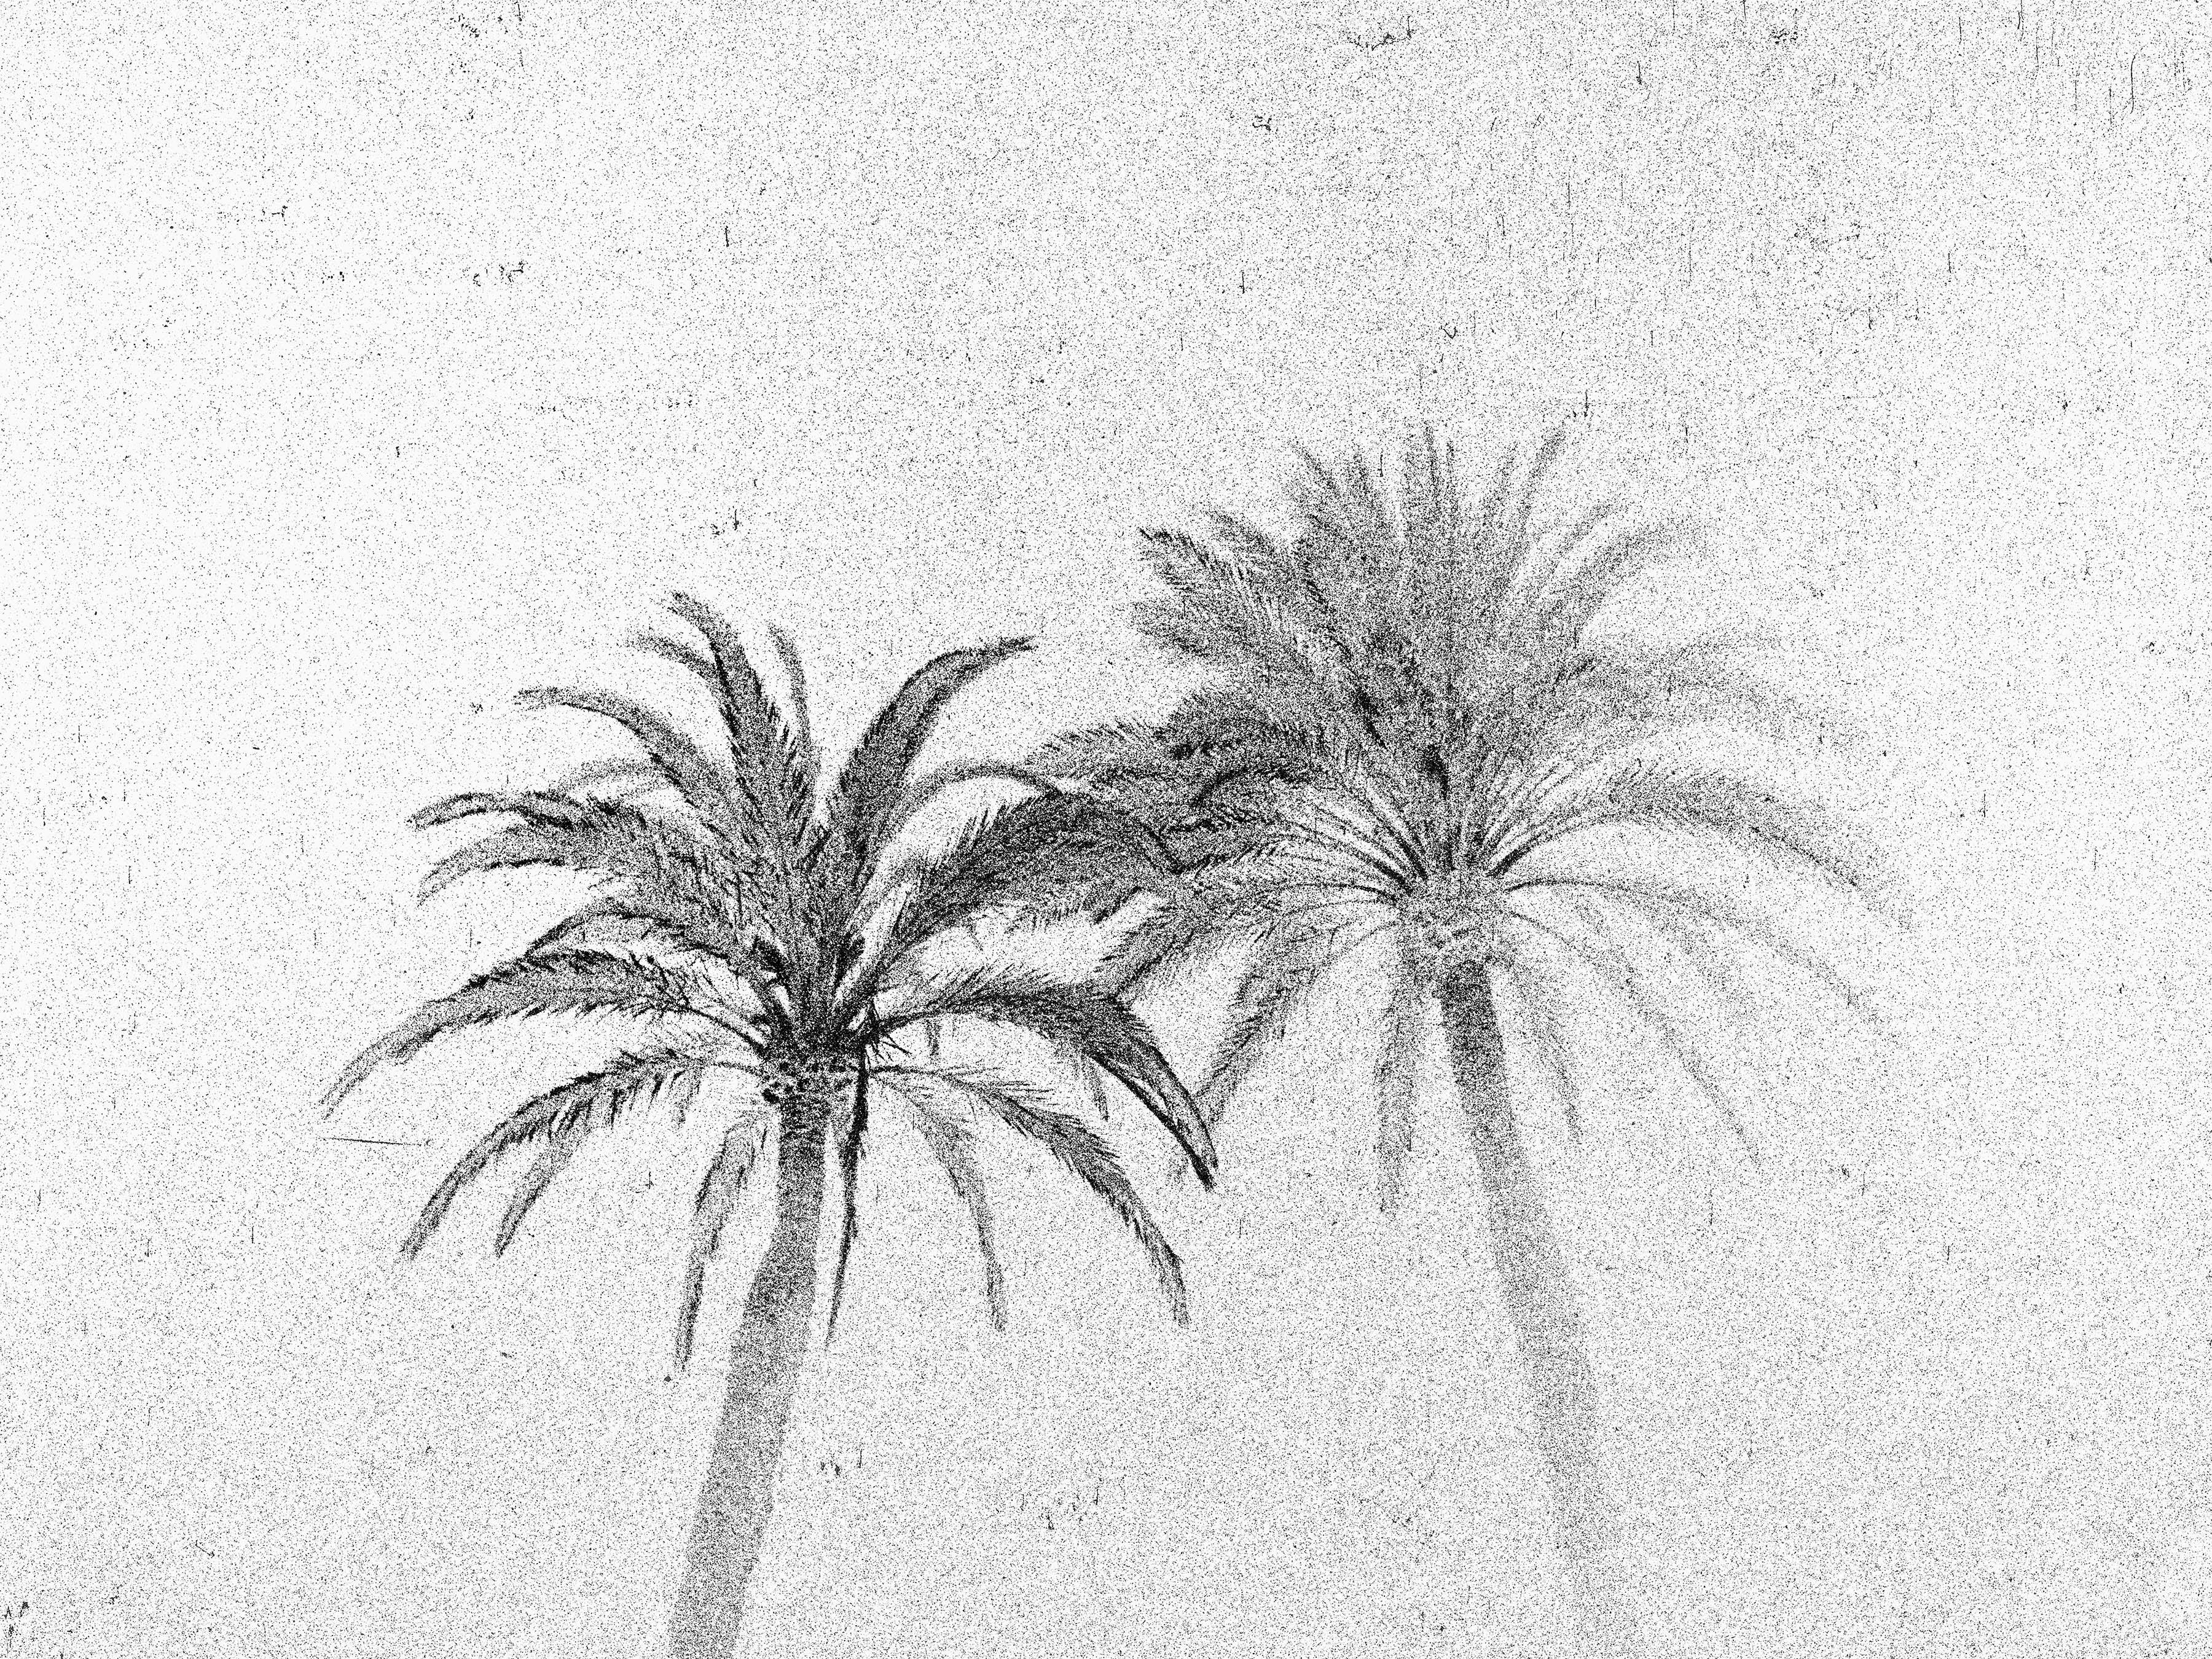 Osheen Harruthoonyan Black and White Photograph – Abend Palmen, Sommerausstellungen, Barcelona – Schwarz-Weiß-Foto, Palmenbäume